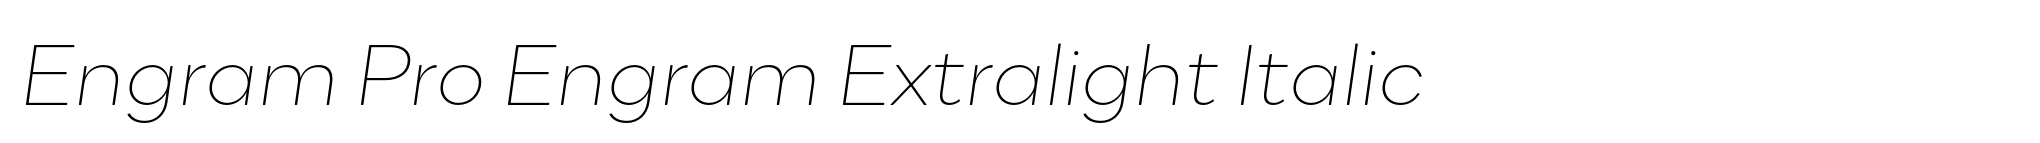 Engram Pro Engram Extralight Italic image